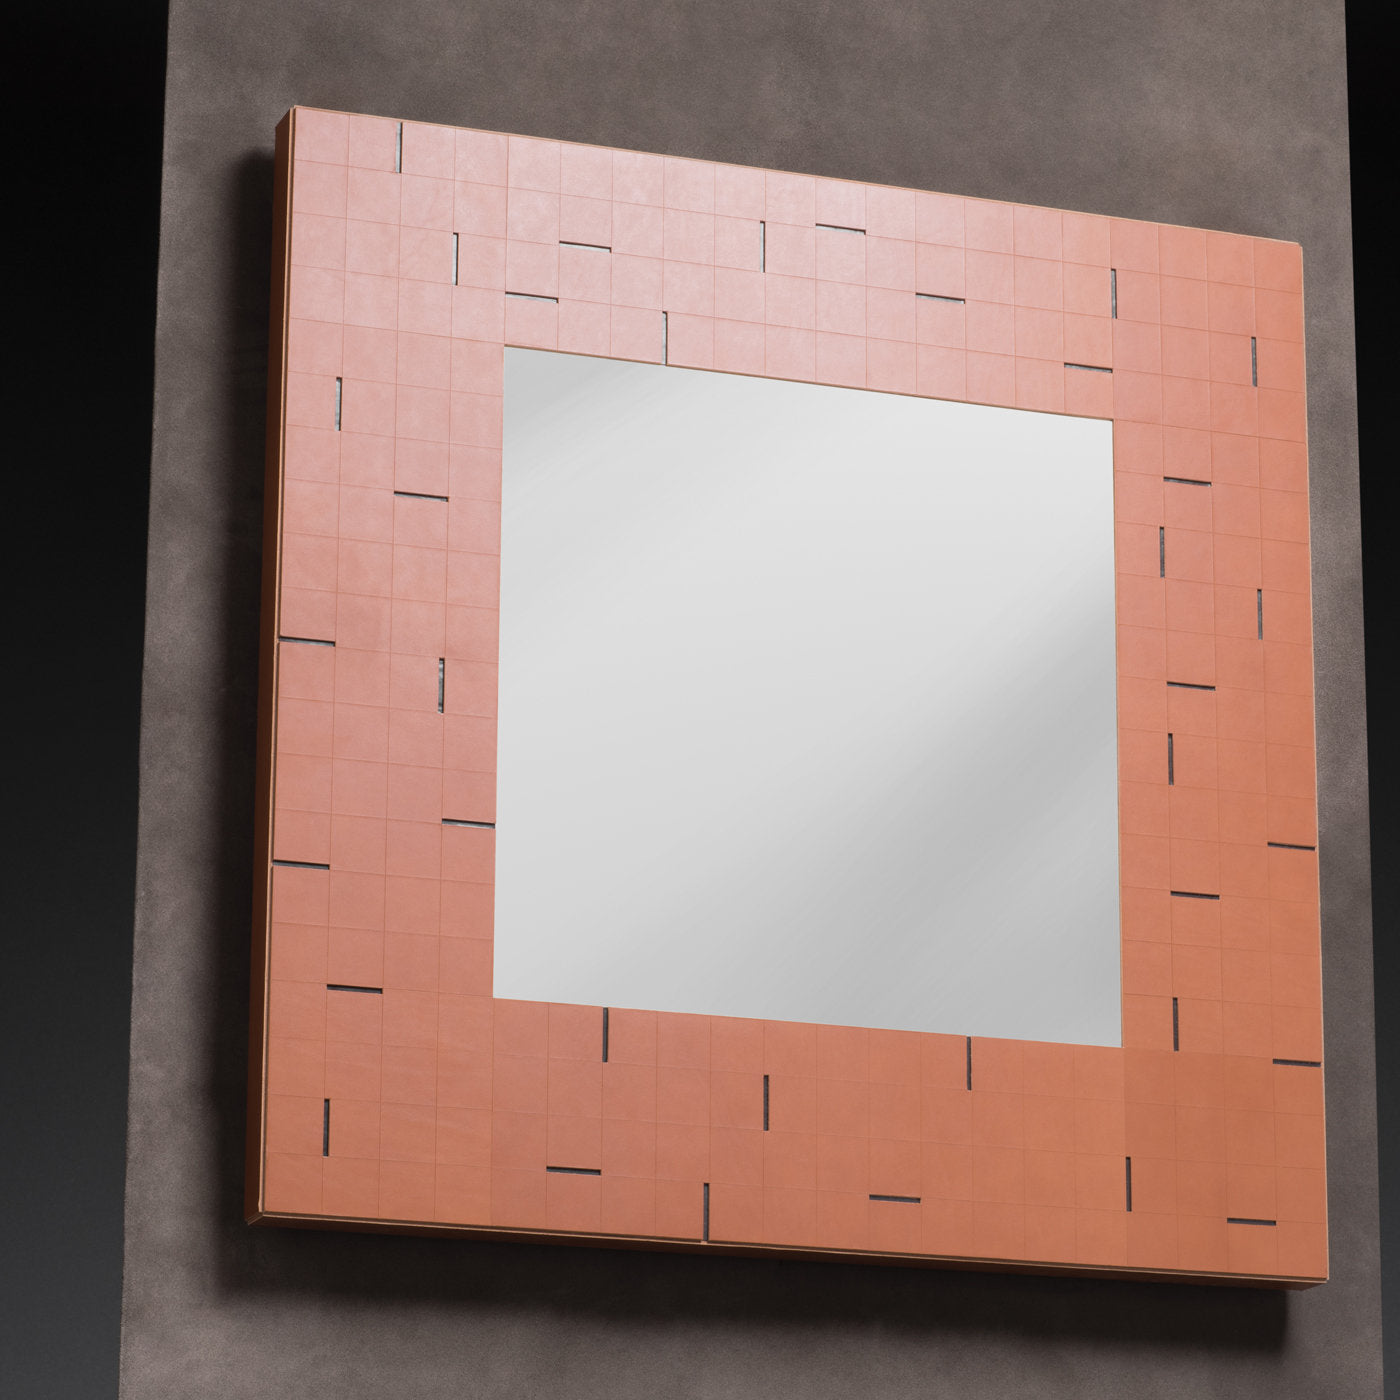 Atari Square Wall Mirror - Alternative view 1